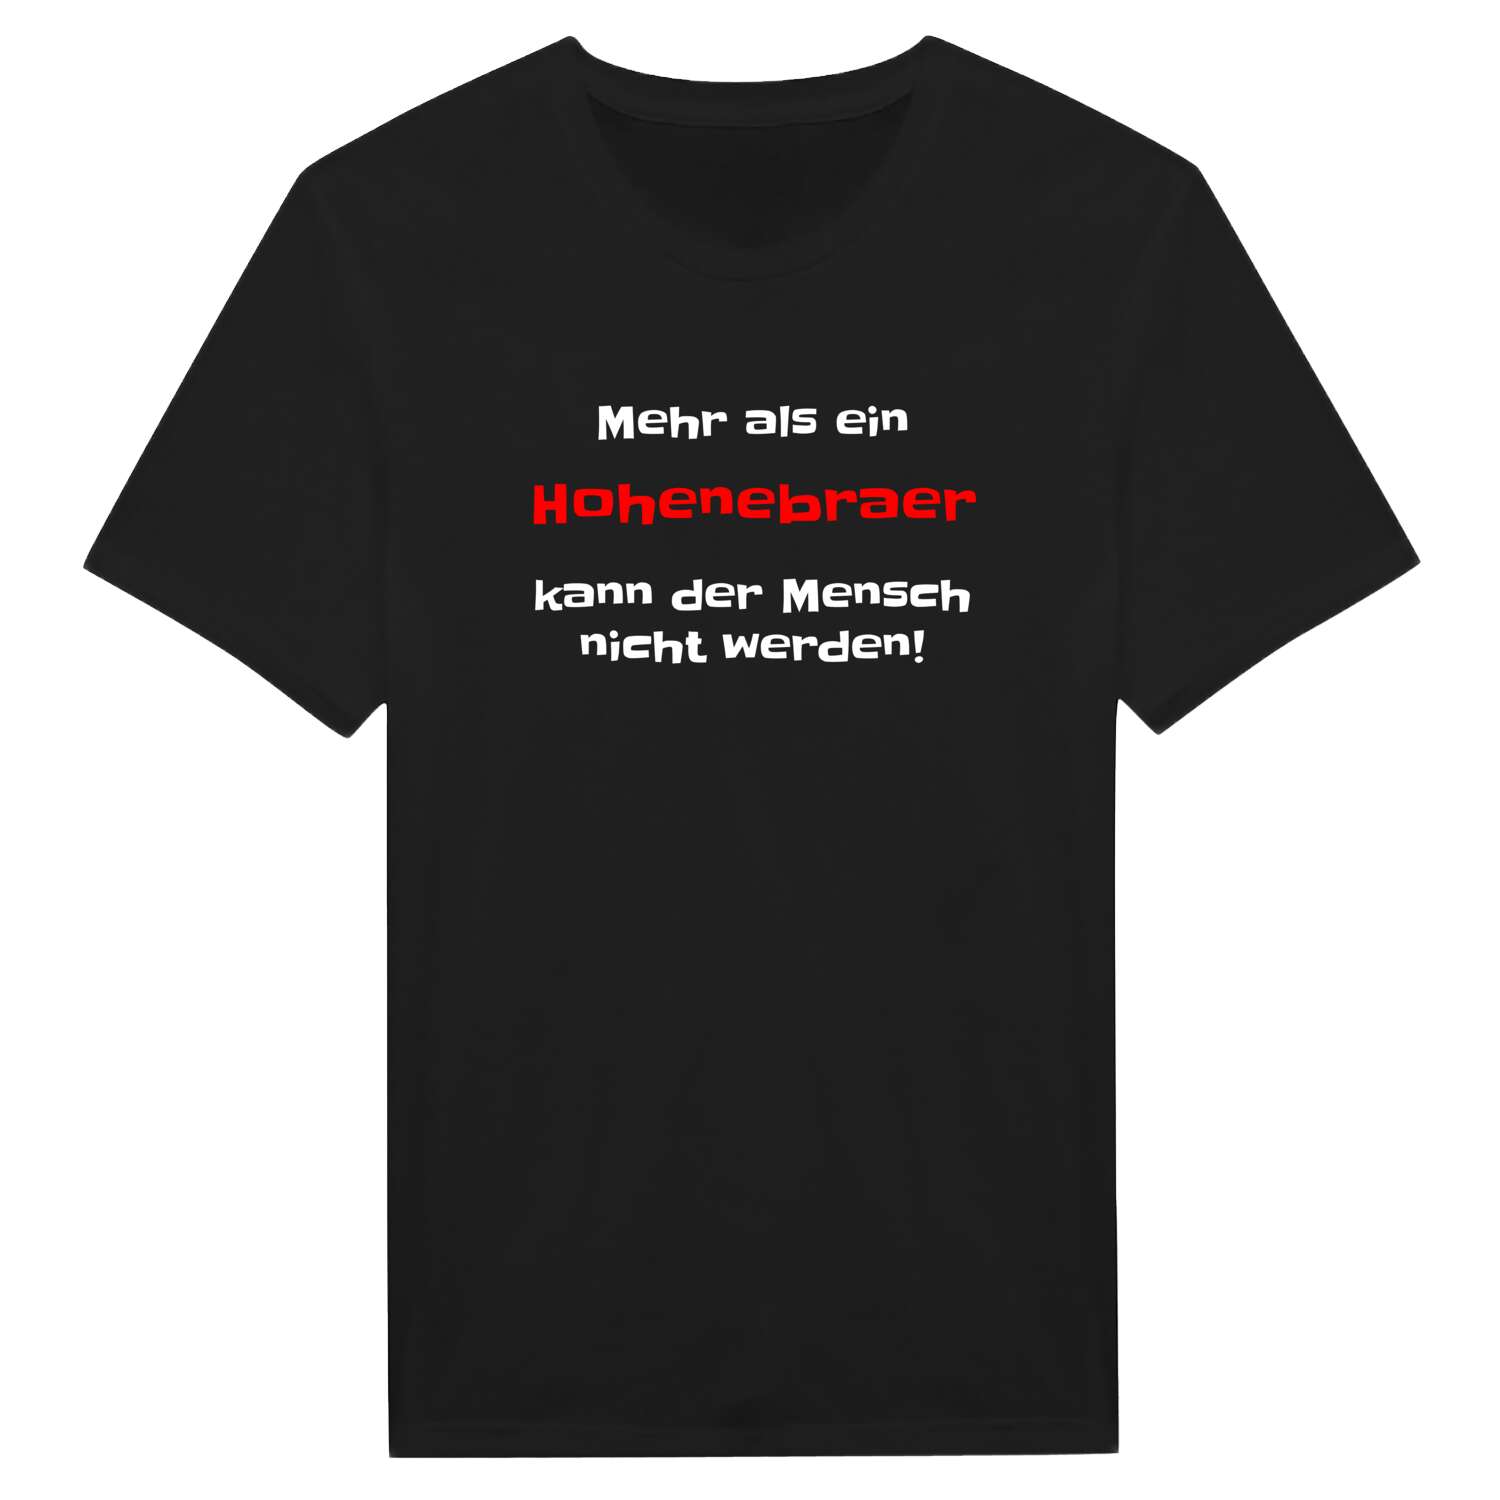 Hohenebra T-Shirt »Mehr als ein«